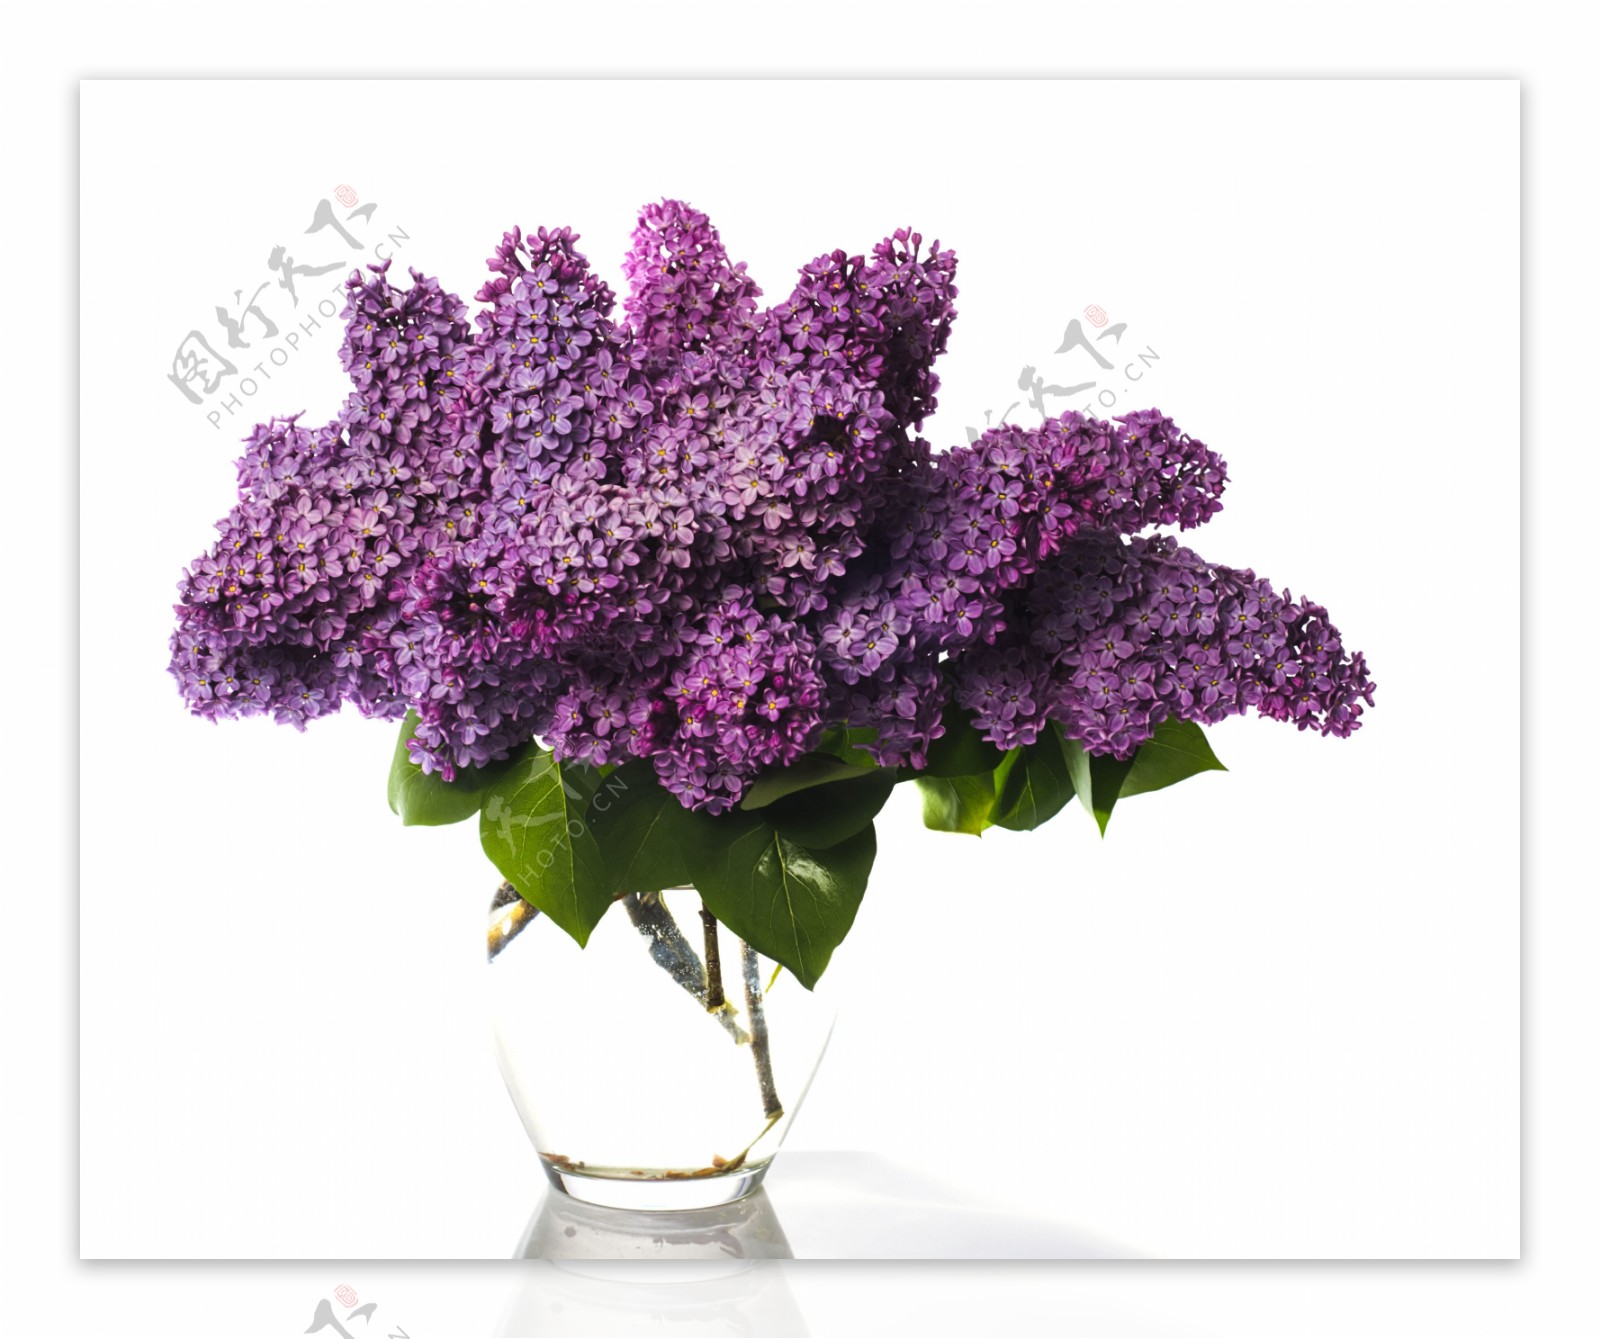 装在花瓶里的一束紫藤花